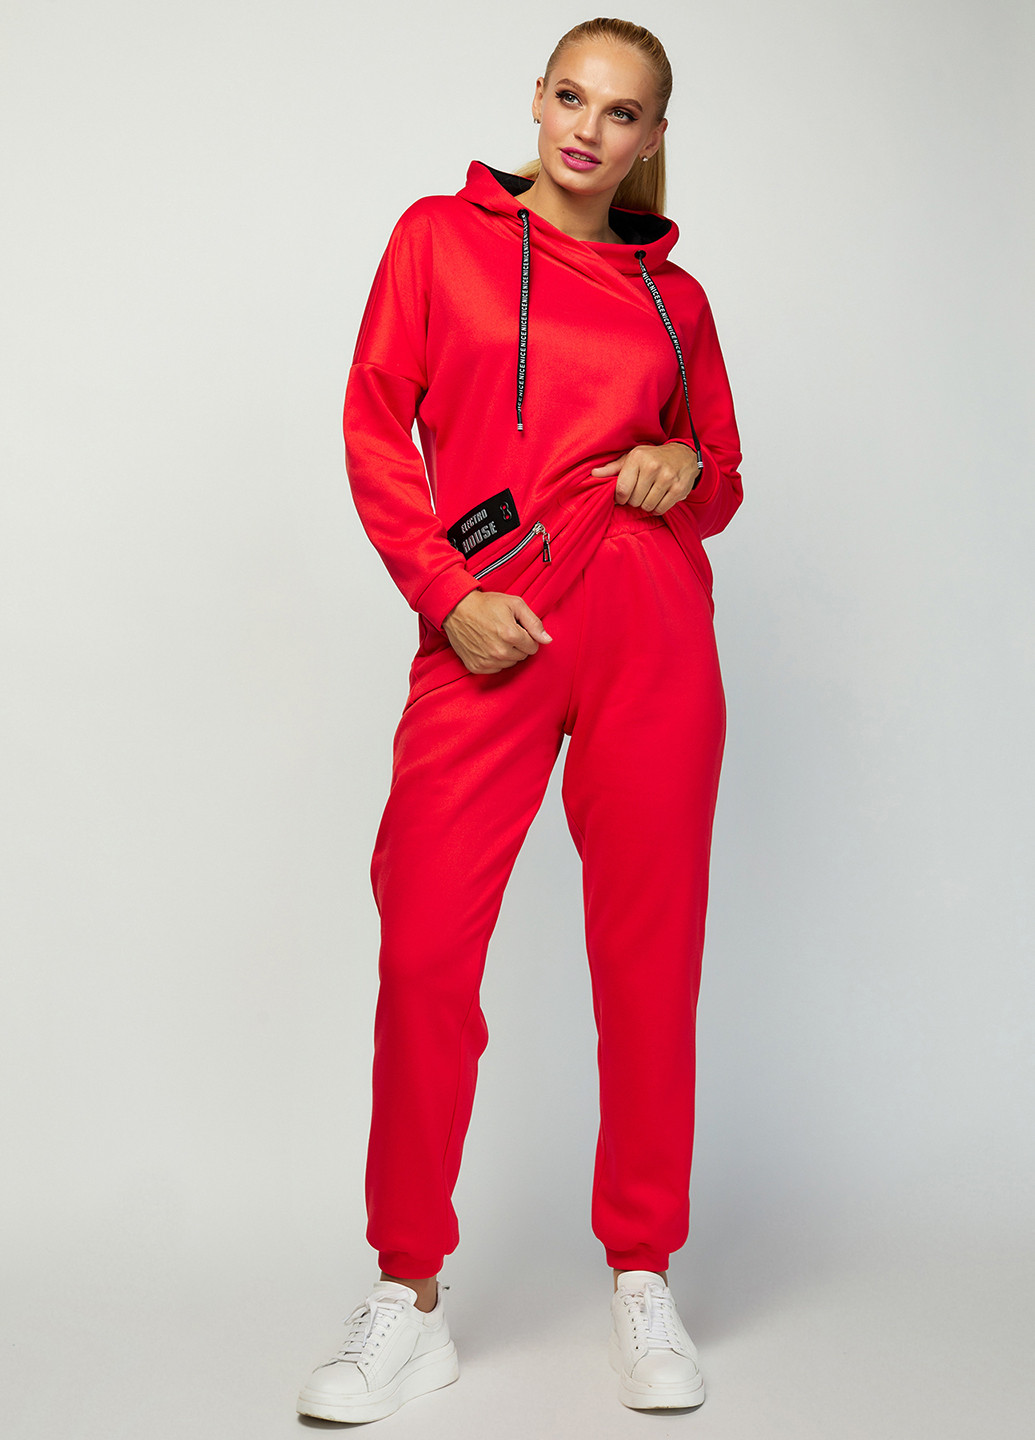 Костюм (худі, брюки) Miledi однотонний червоний спортивний трикотаж, бавовна